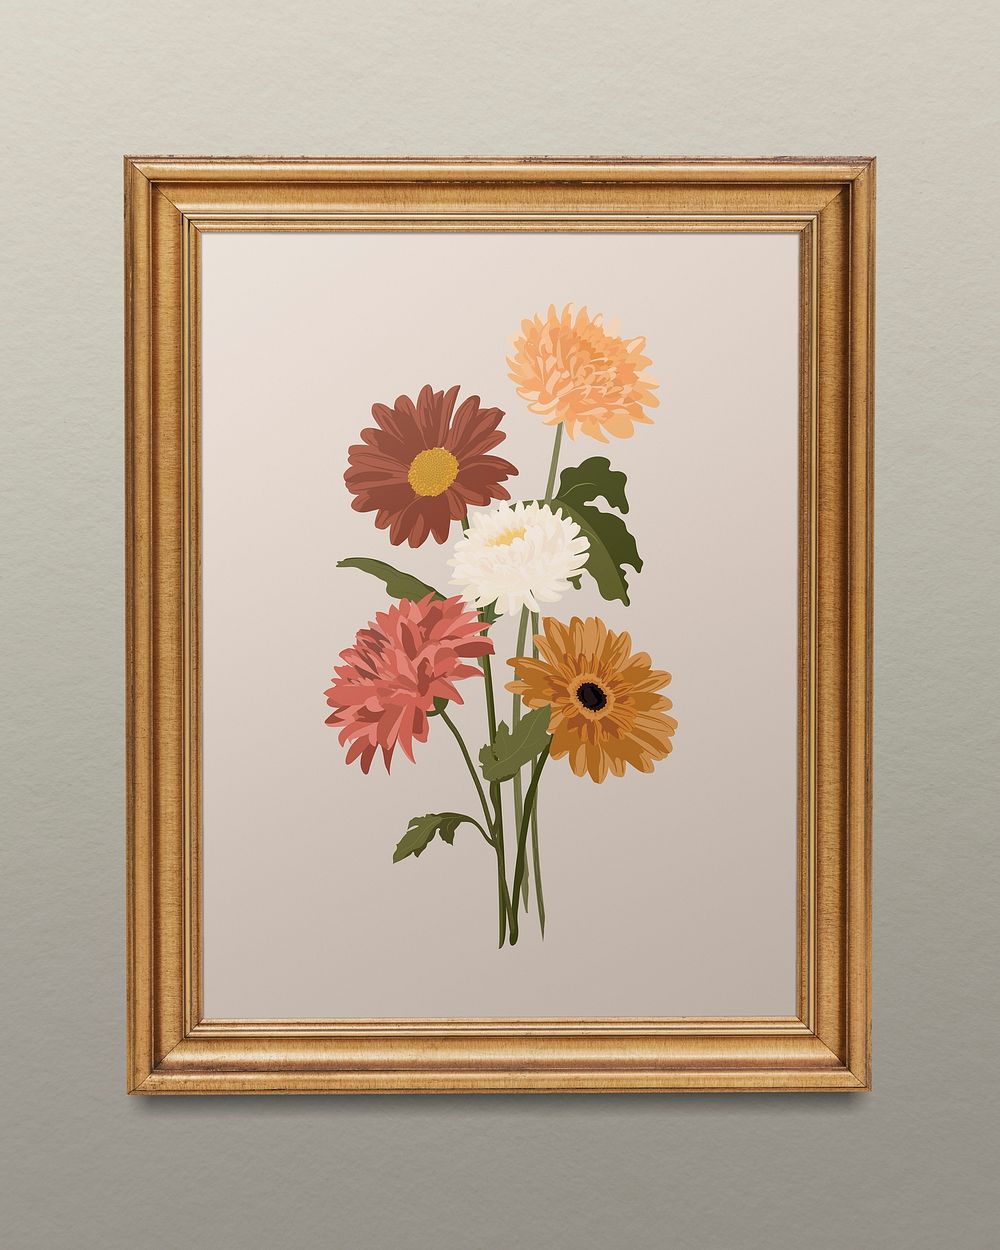 Flower illustration, gold frame design